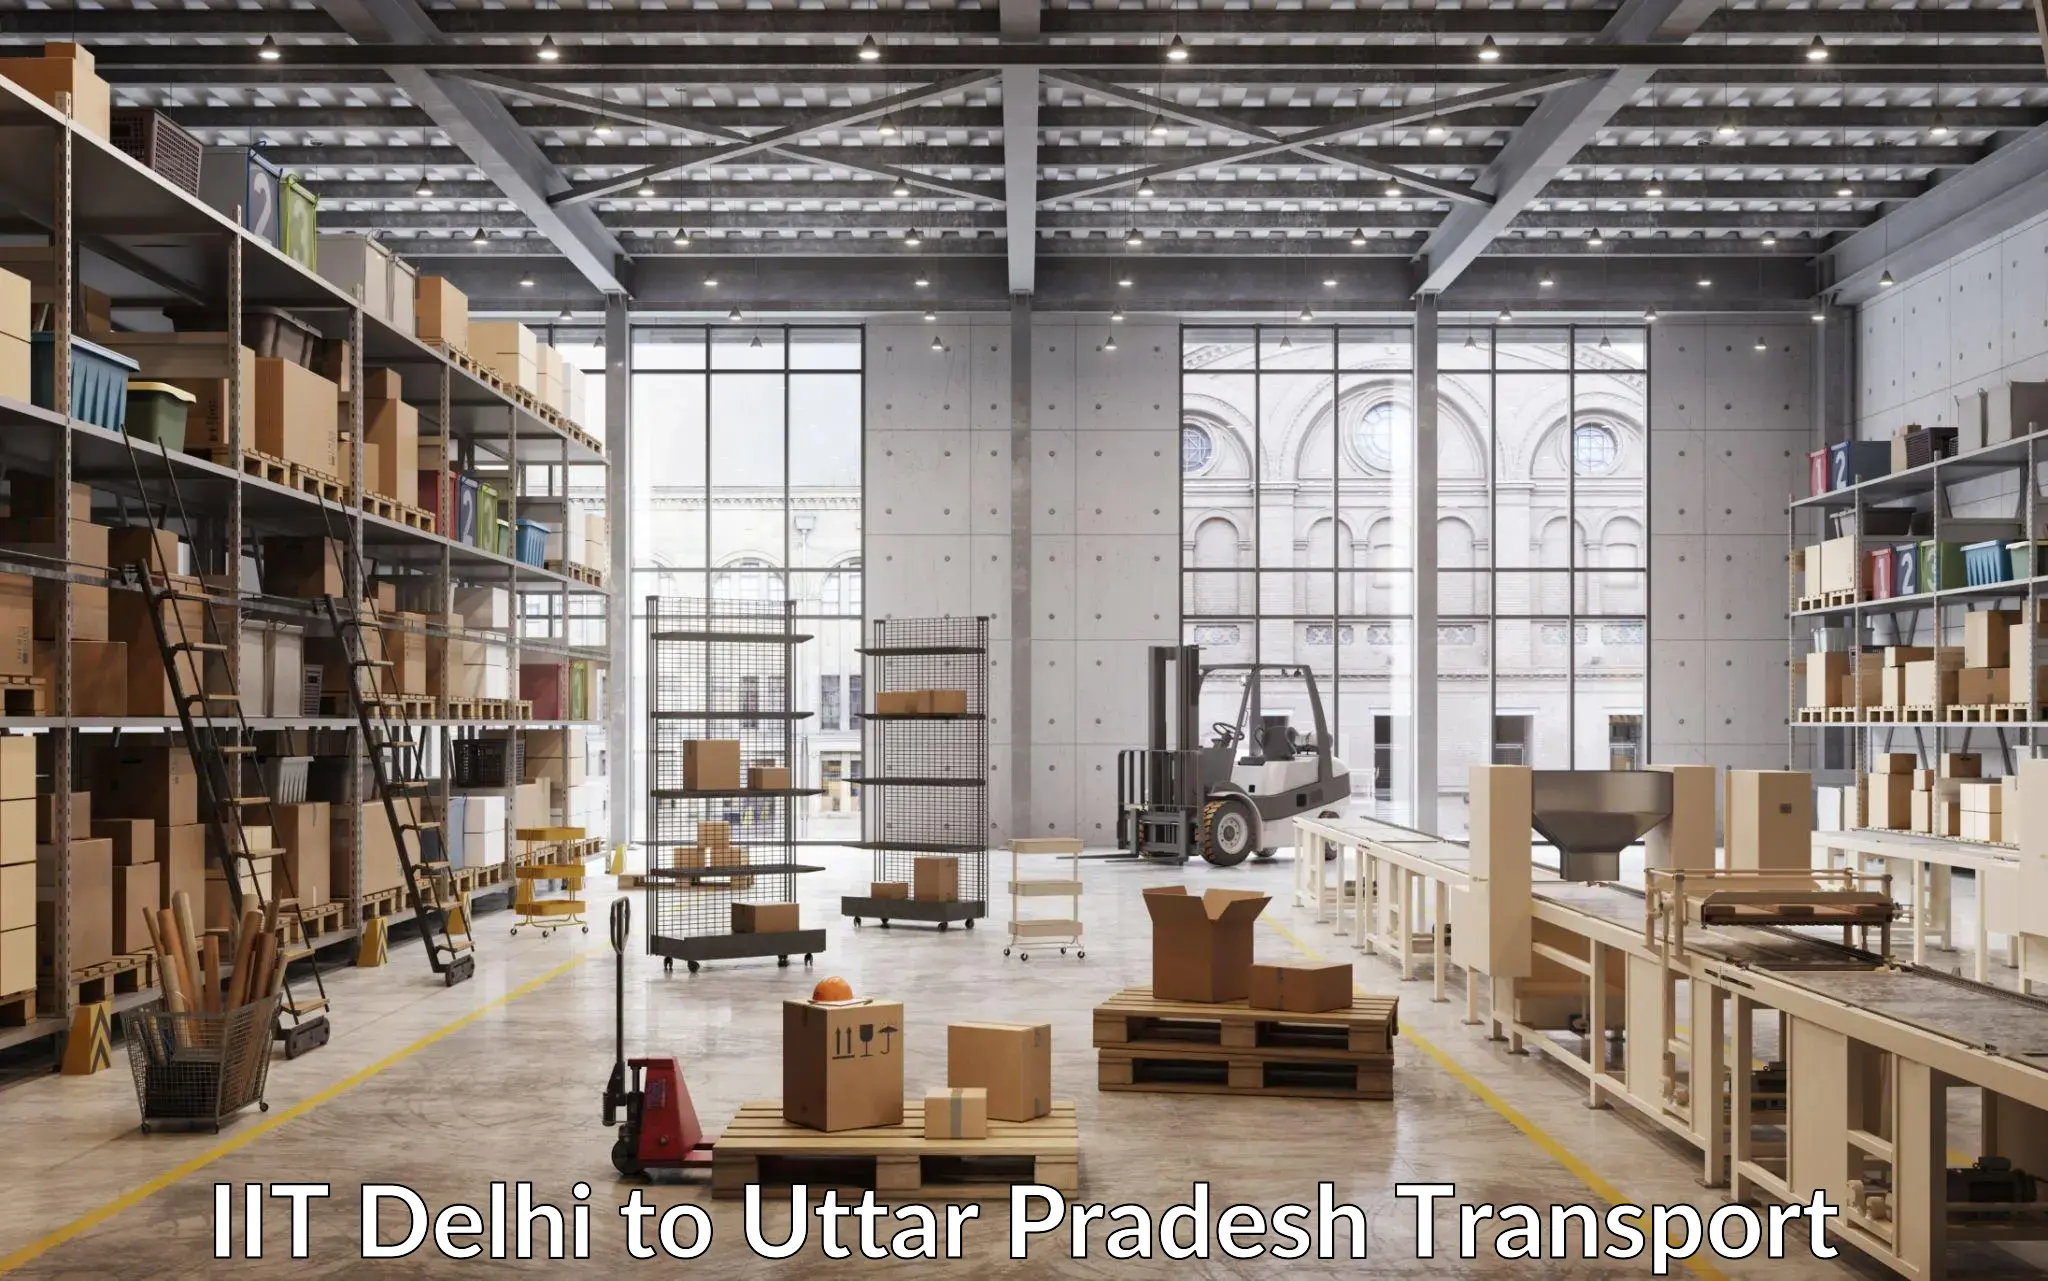 Online transport service IIT Delhi to Kumarganj